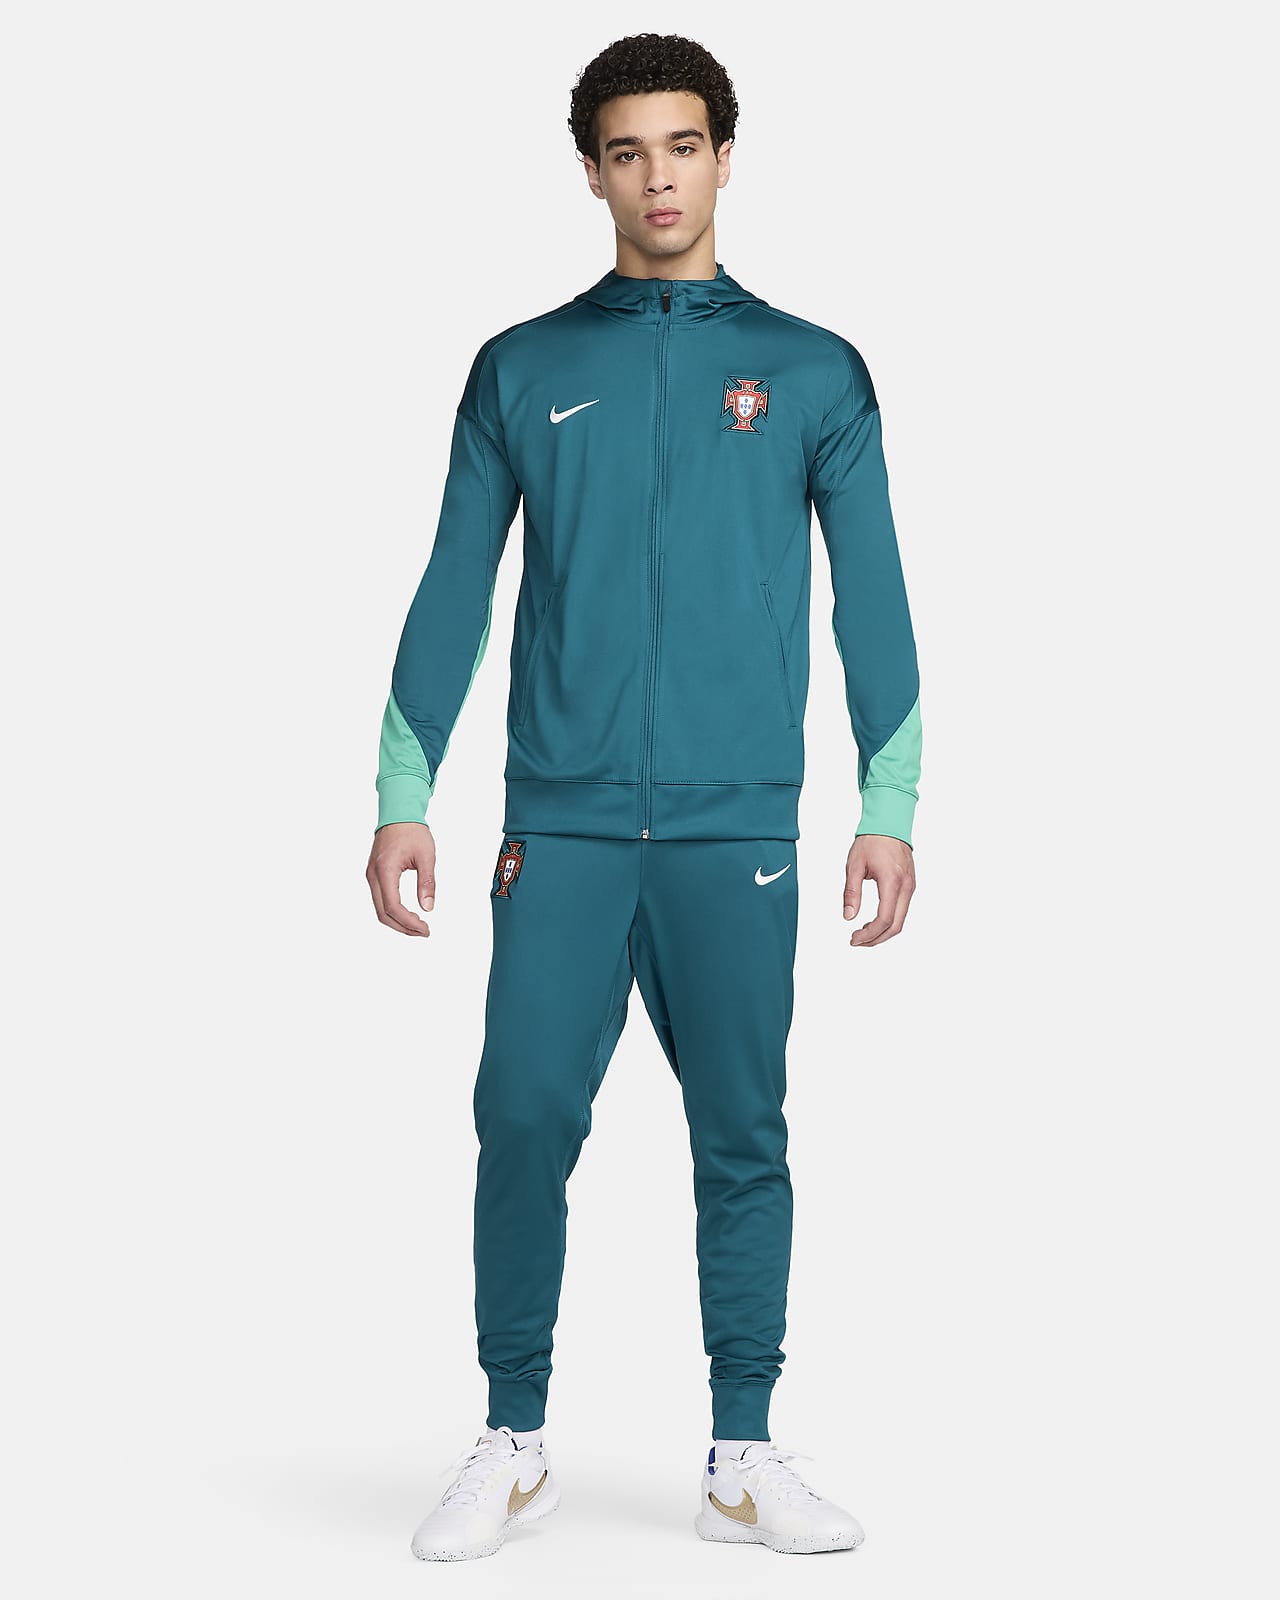 Portugal Strike Nike Dri-FIT knit voetbaltrainingspak met capuchon voor heren